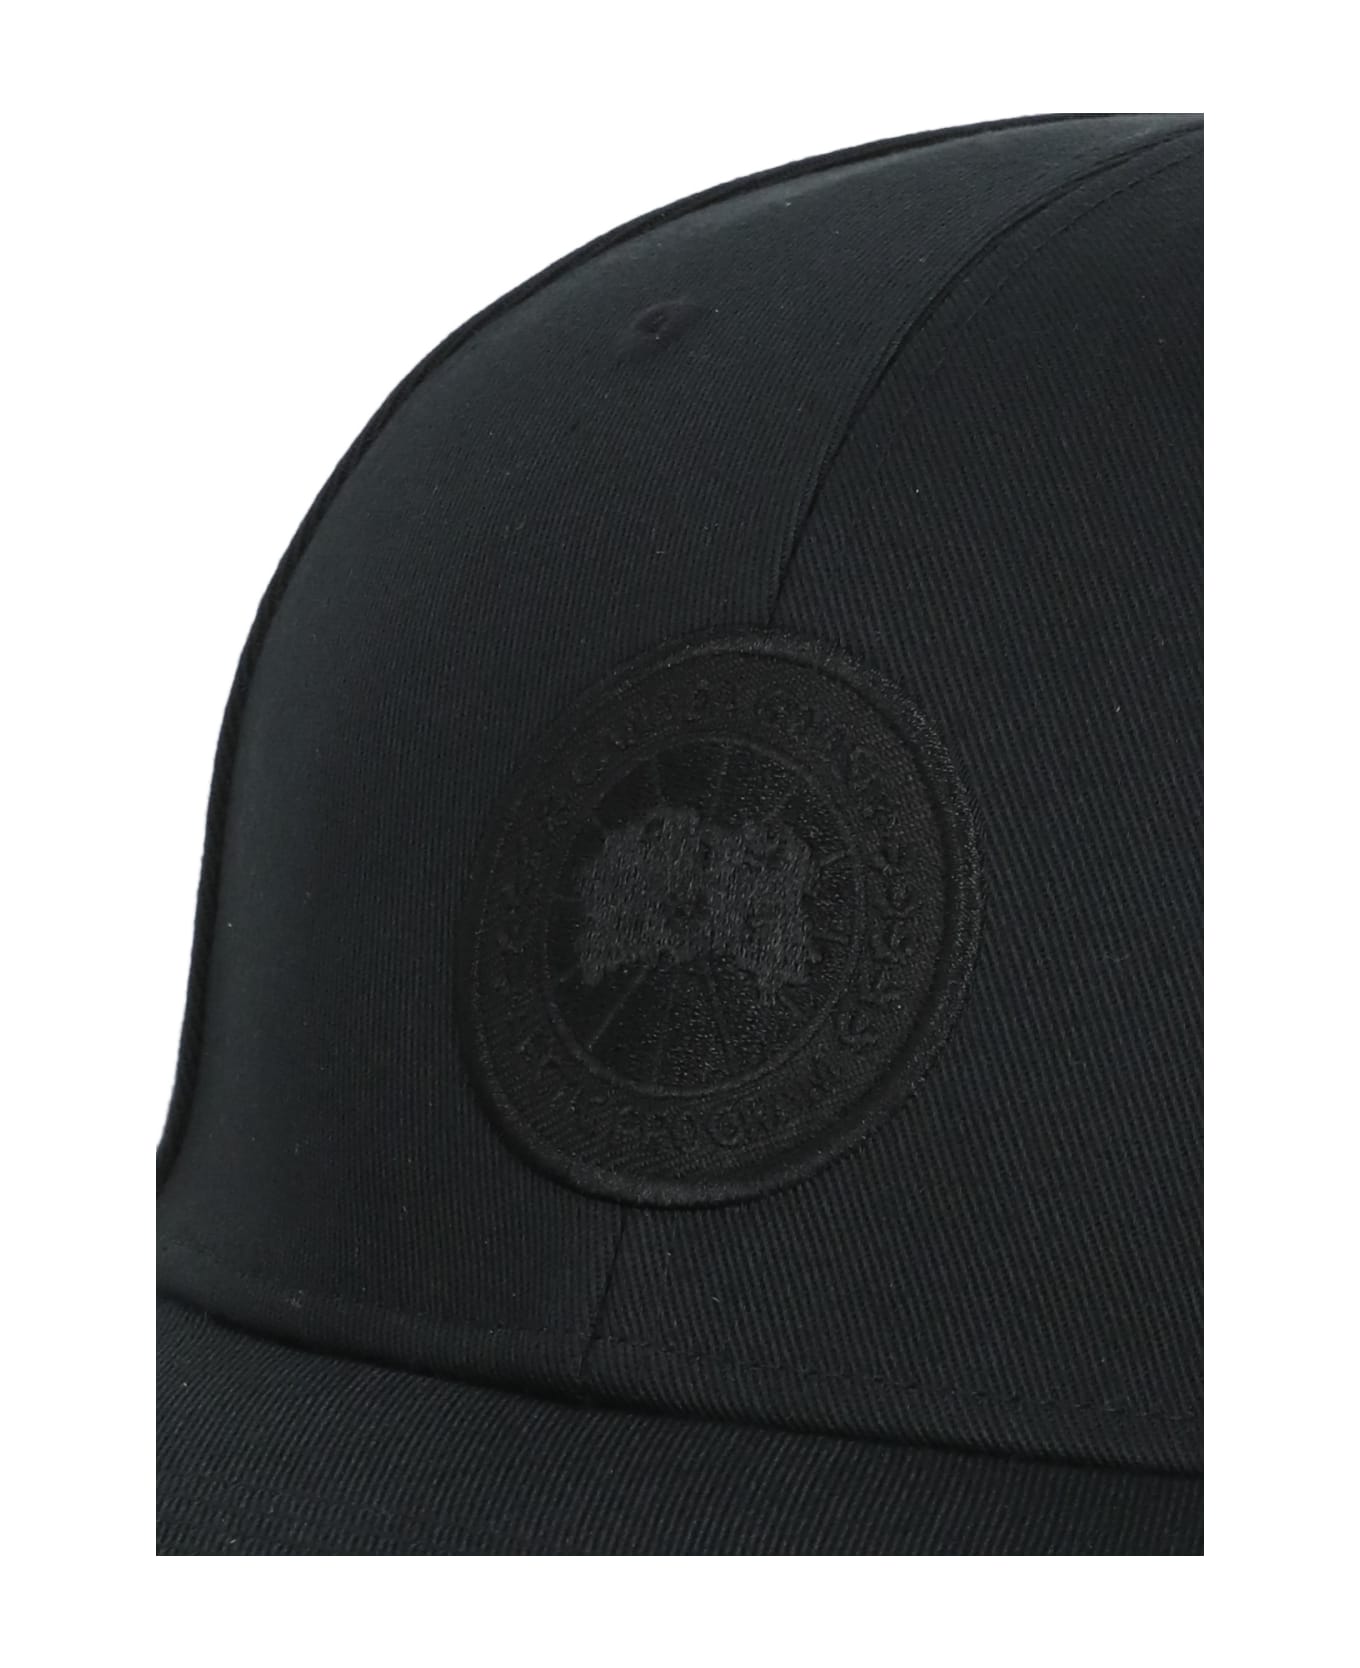 Canada Goose Tonal Baseball Cap - Black 帽子